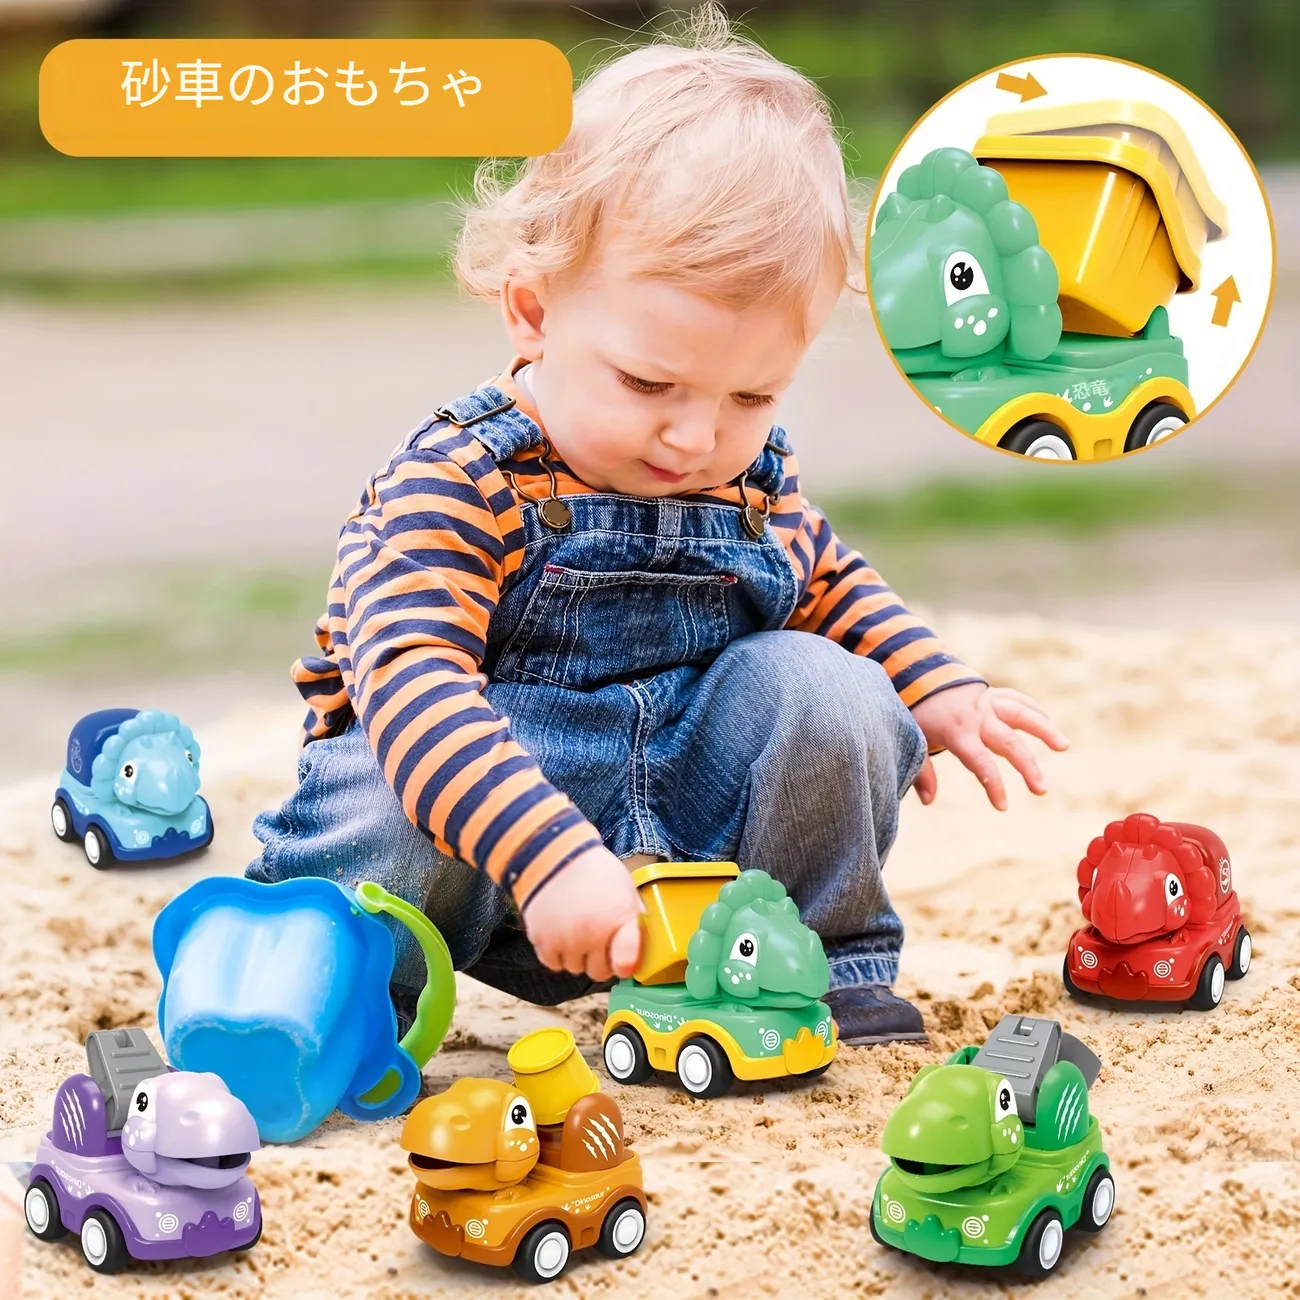 2歳の男の子向け恐竜カー、ベビーディノ プルバックトラック プレイマット収納バッグ付き、幼児用摩擦動力建設車両6個、キッズディノトラック  誕生日プレゼント 1歳から3歳の幼児女の子へ おもちゃ・ゲーム Temu Japan